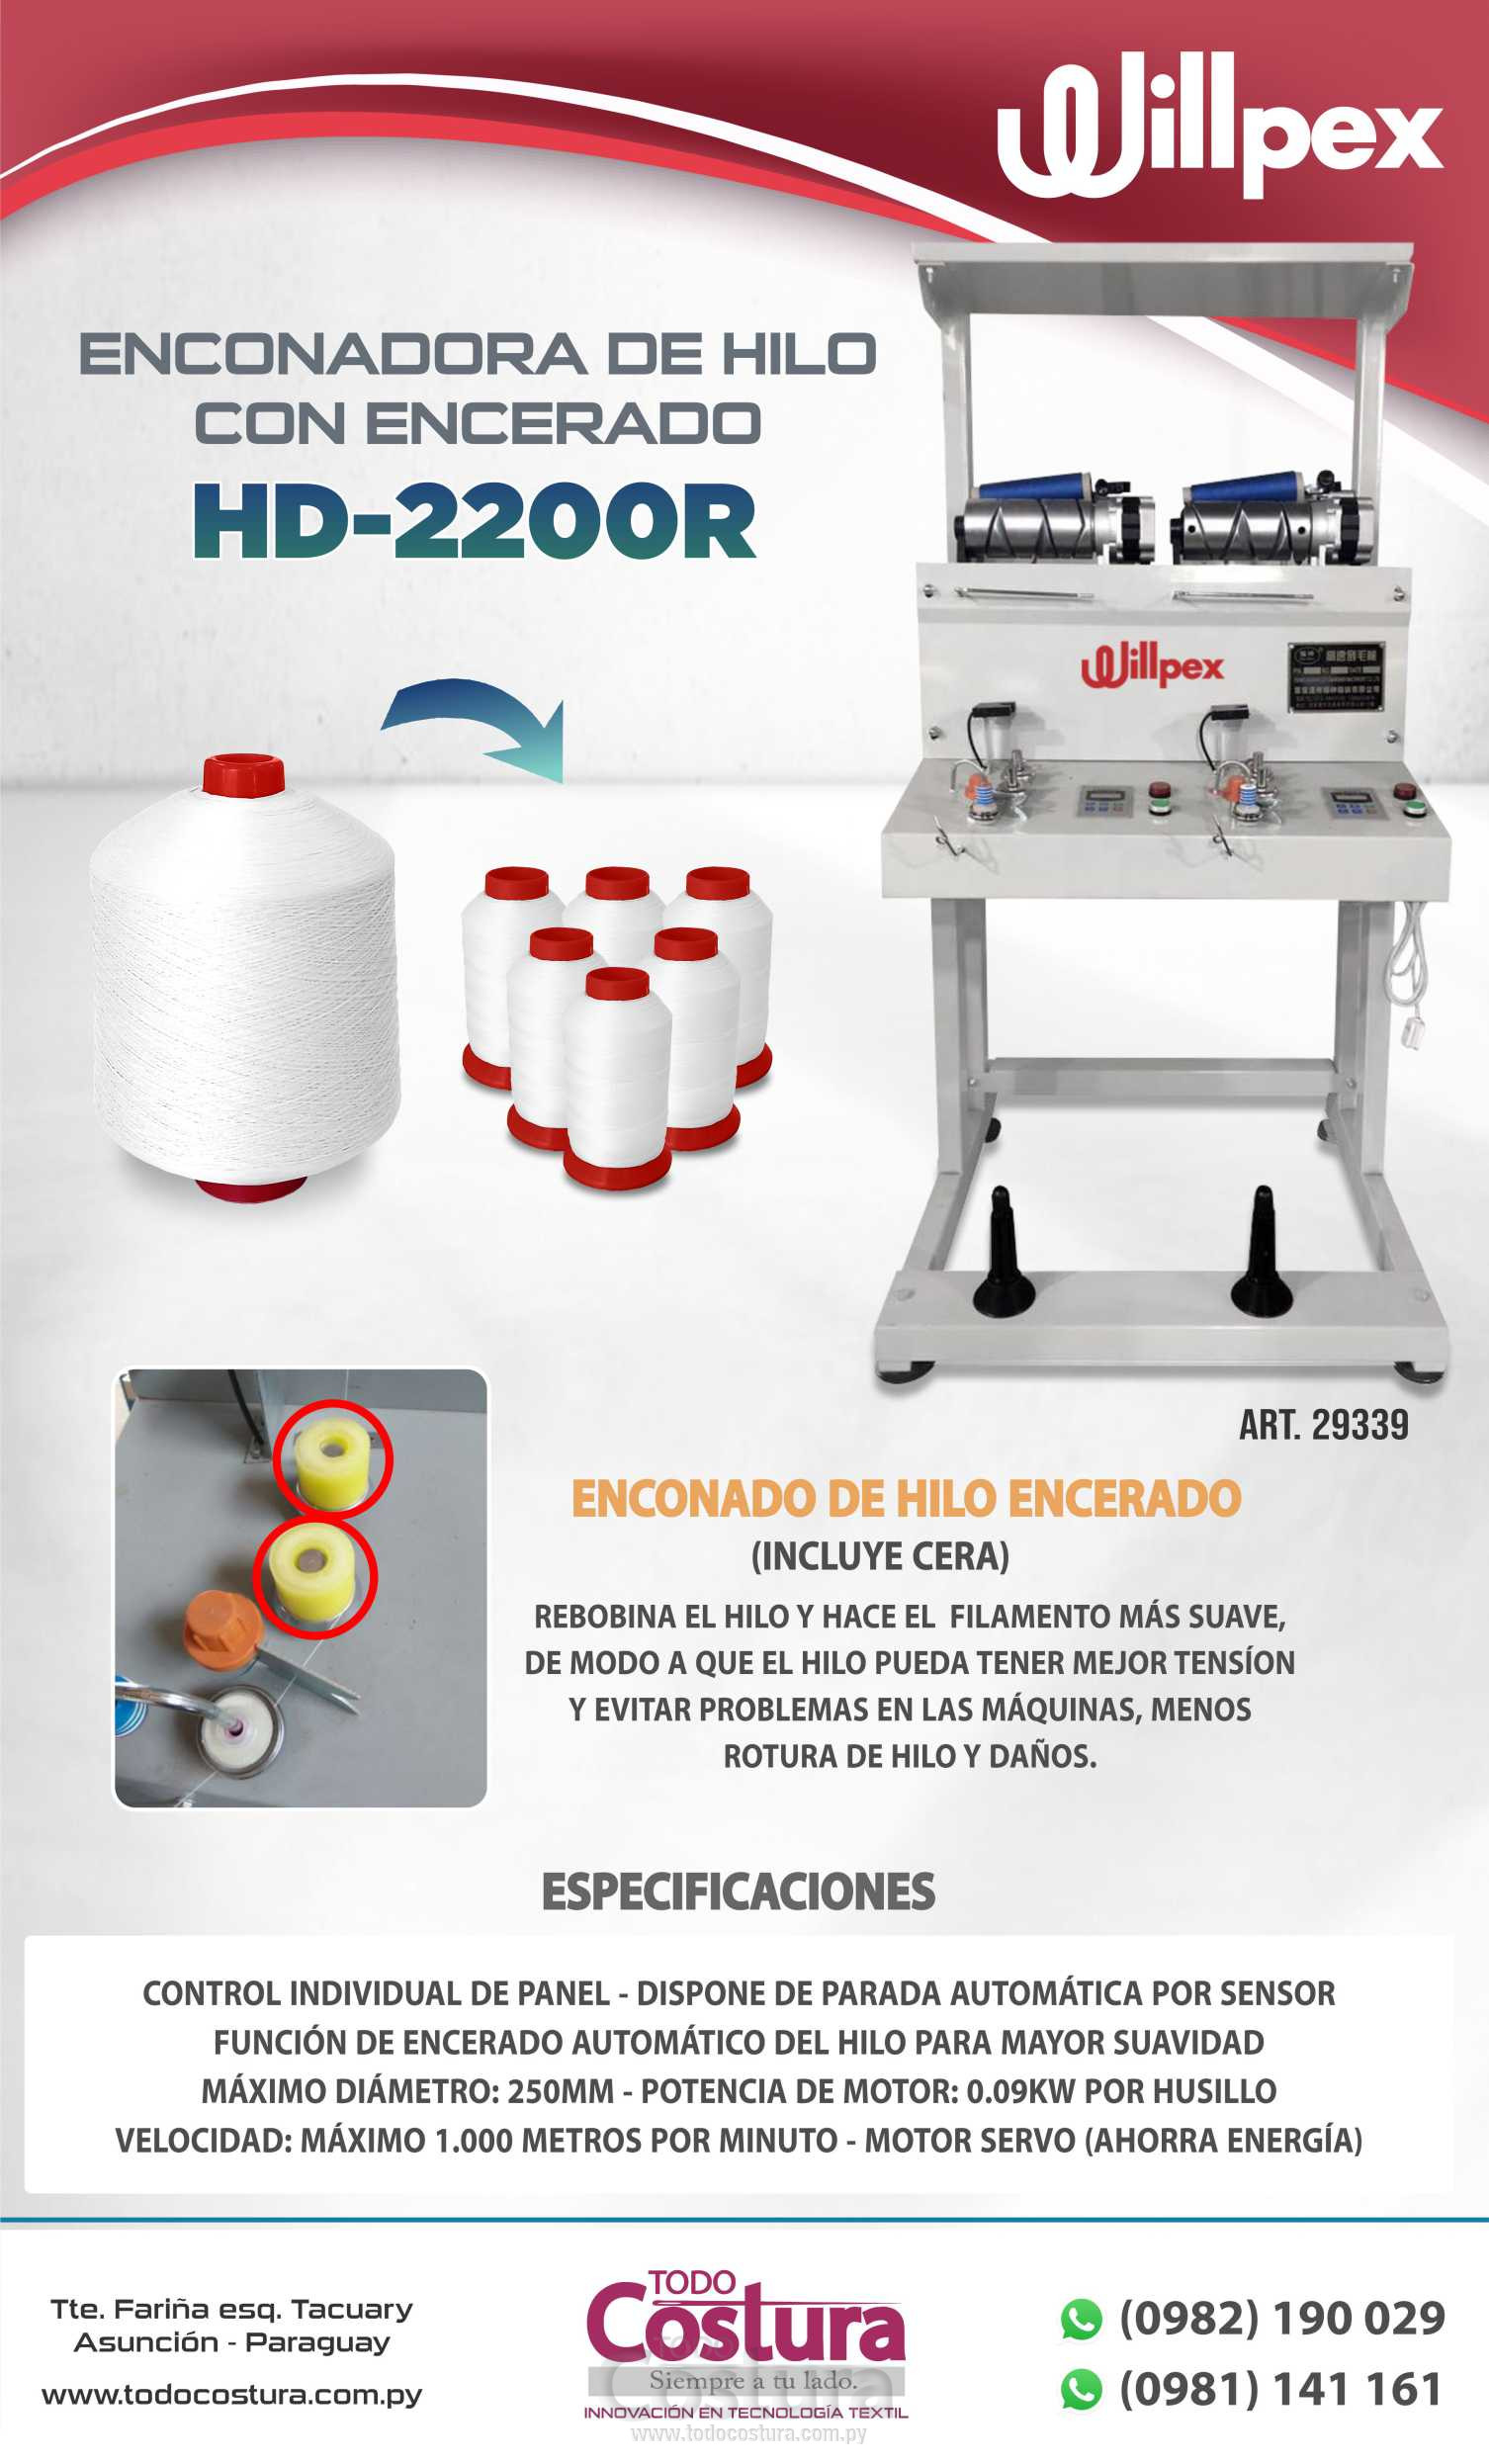 ENCONADORA DE HILO CON ENCERADO (2 HILOS) WILLPEX HD-2200R